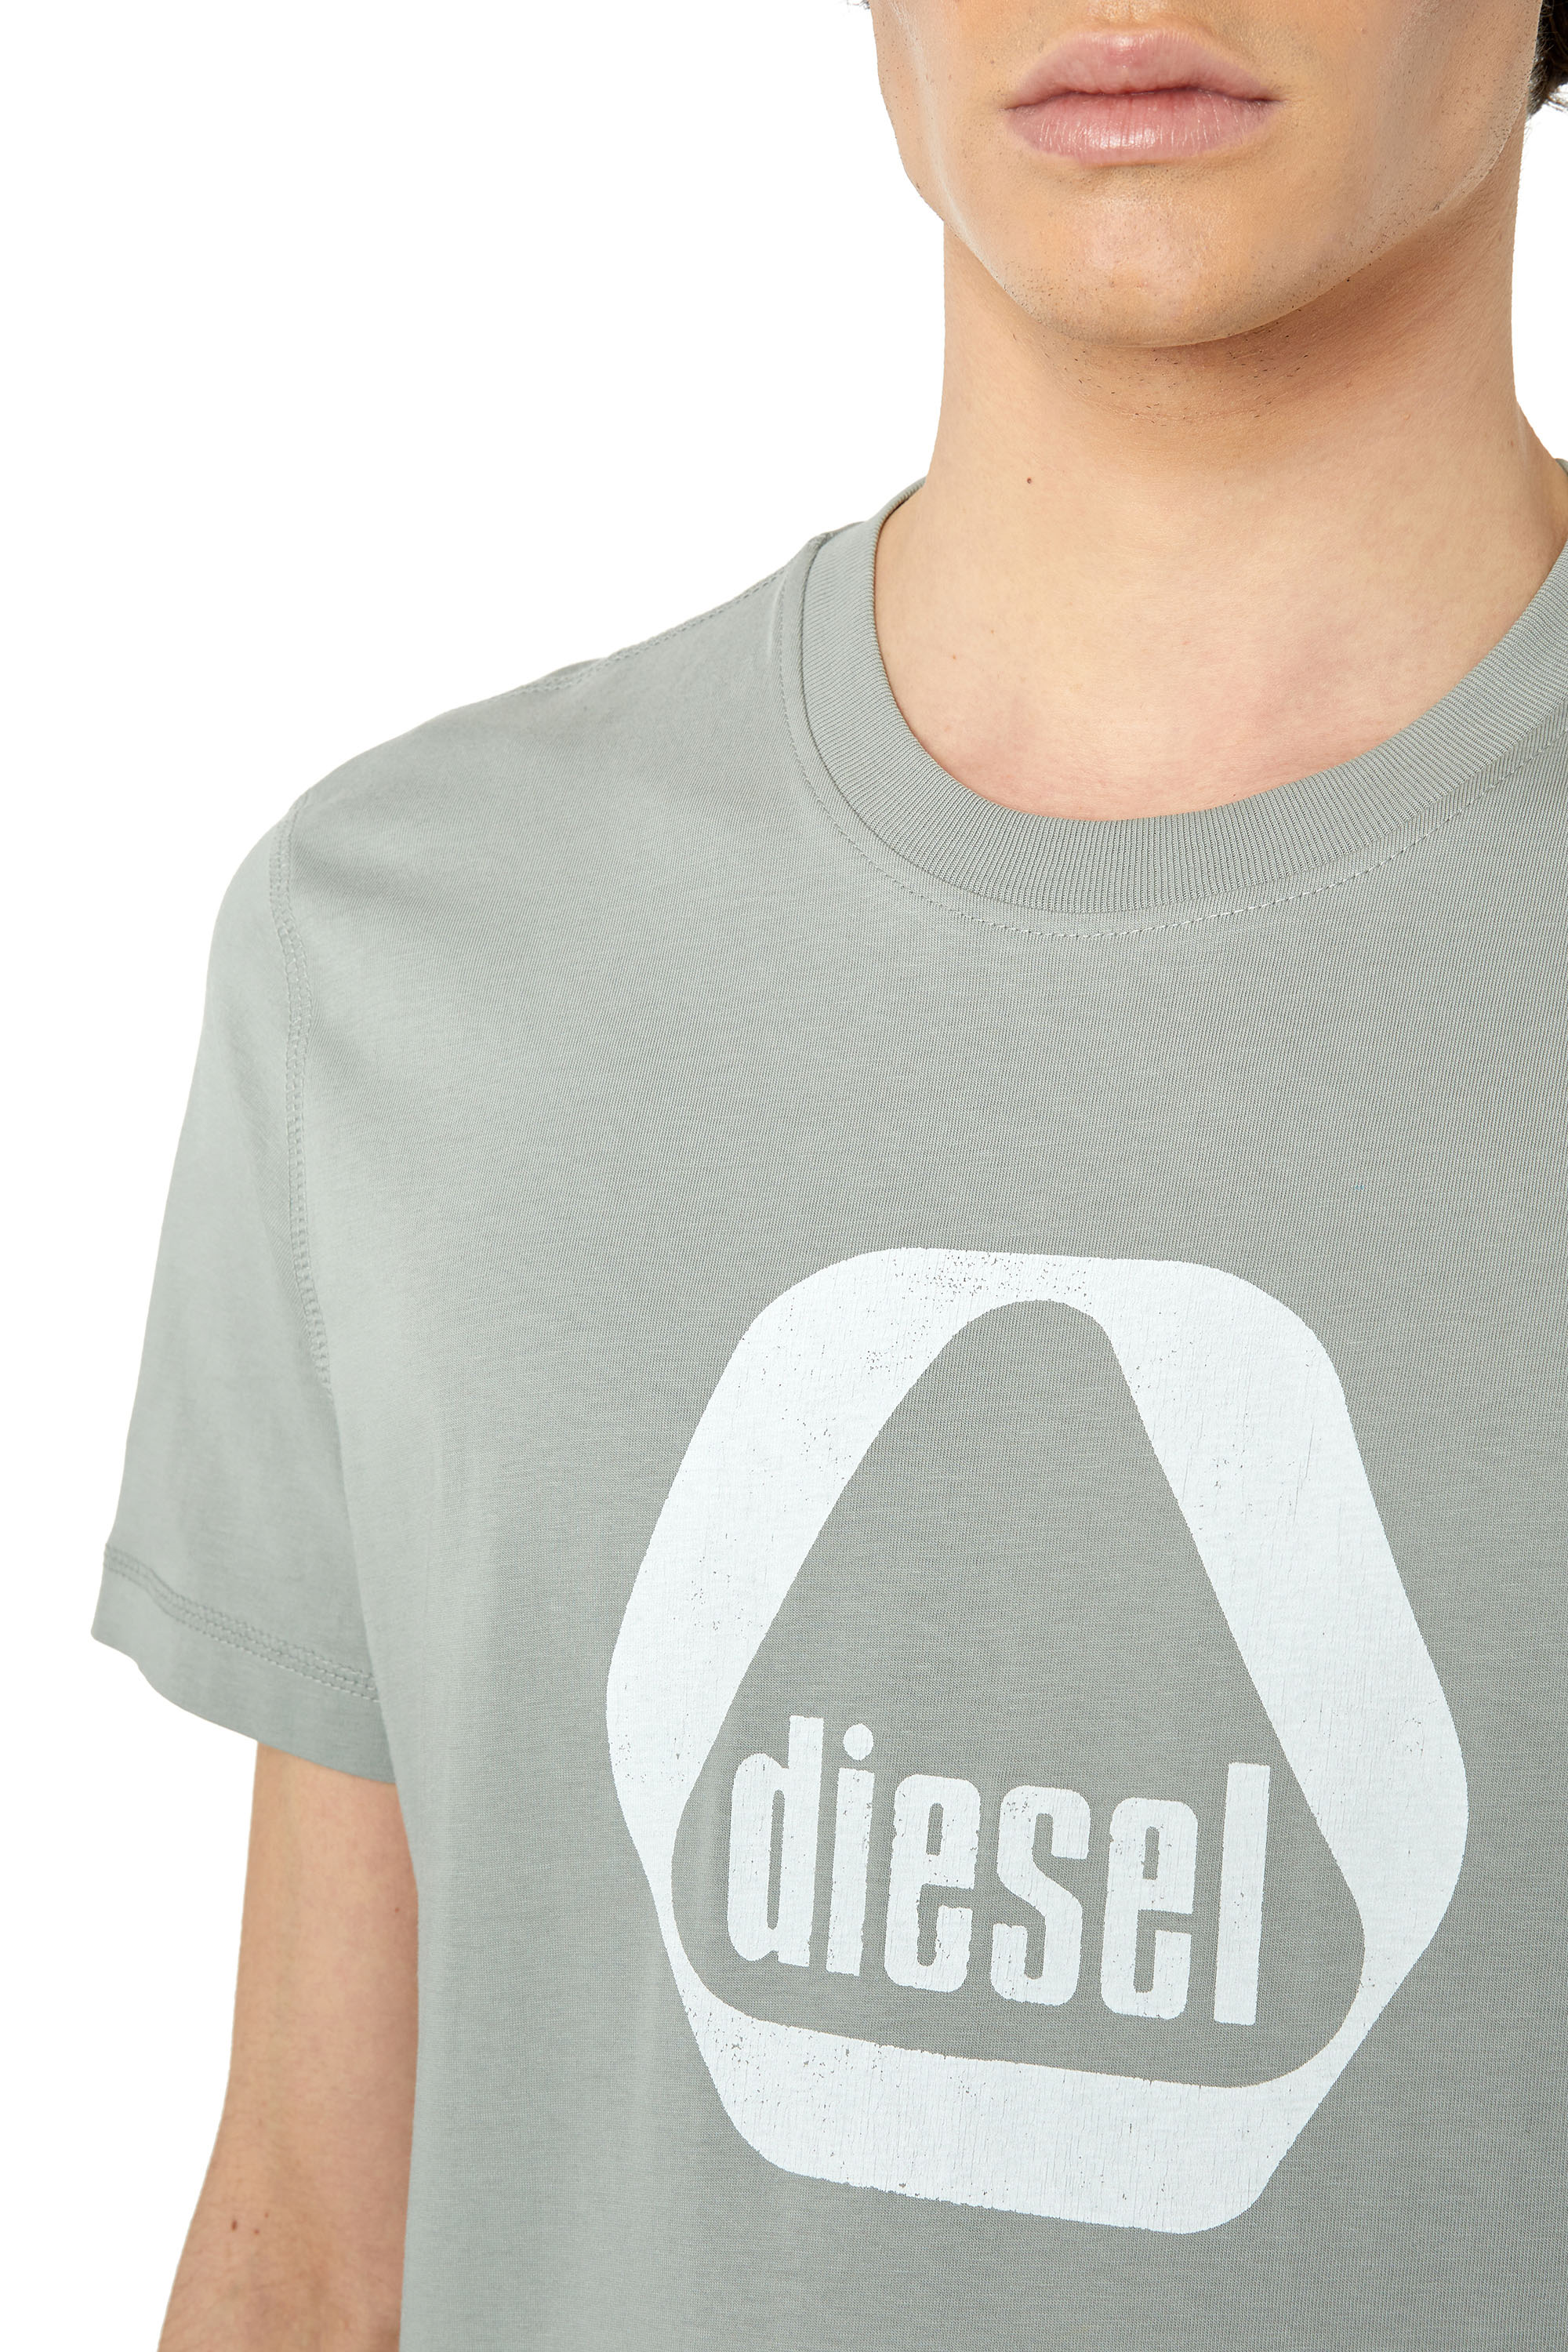 Diesel - T-DIEGOR-G10, Gris Claro - Image 3